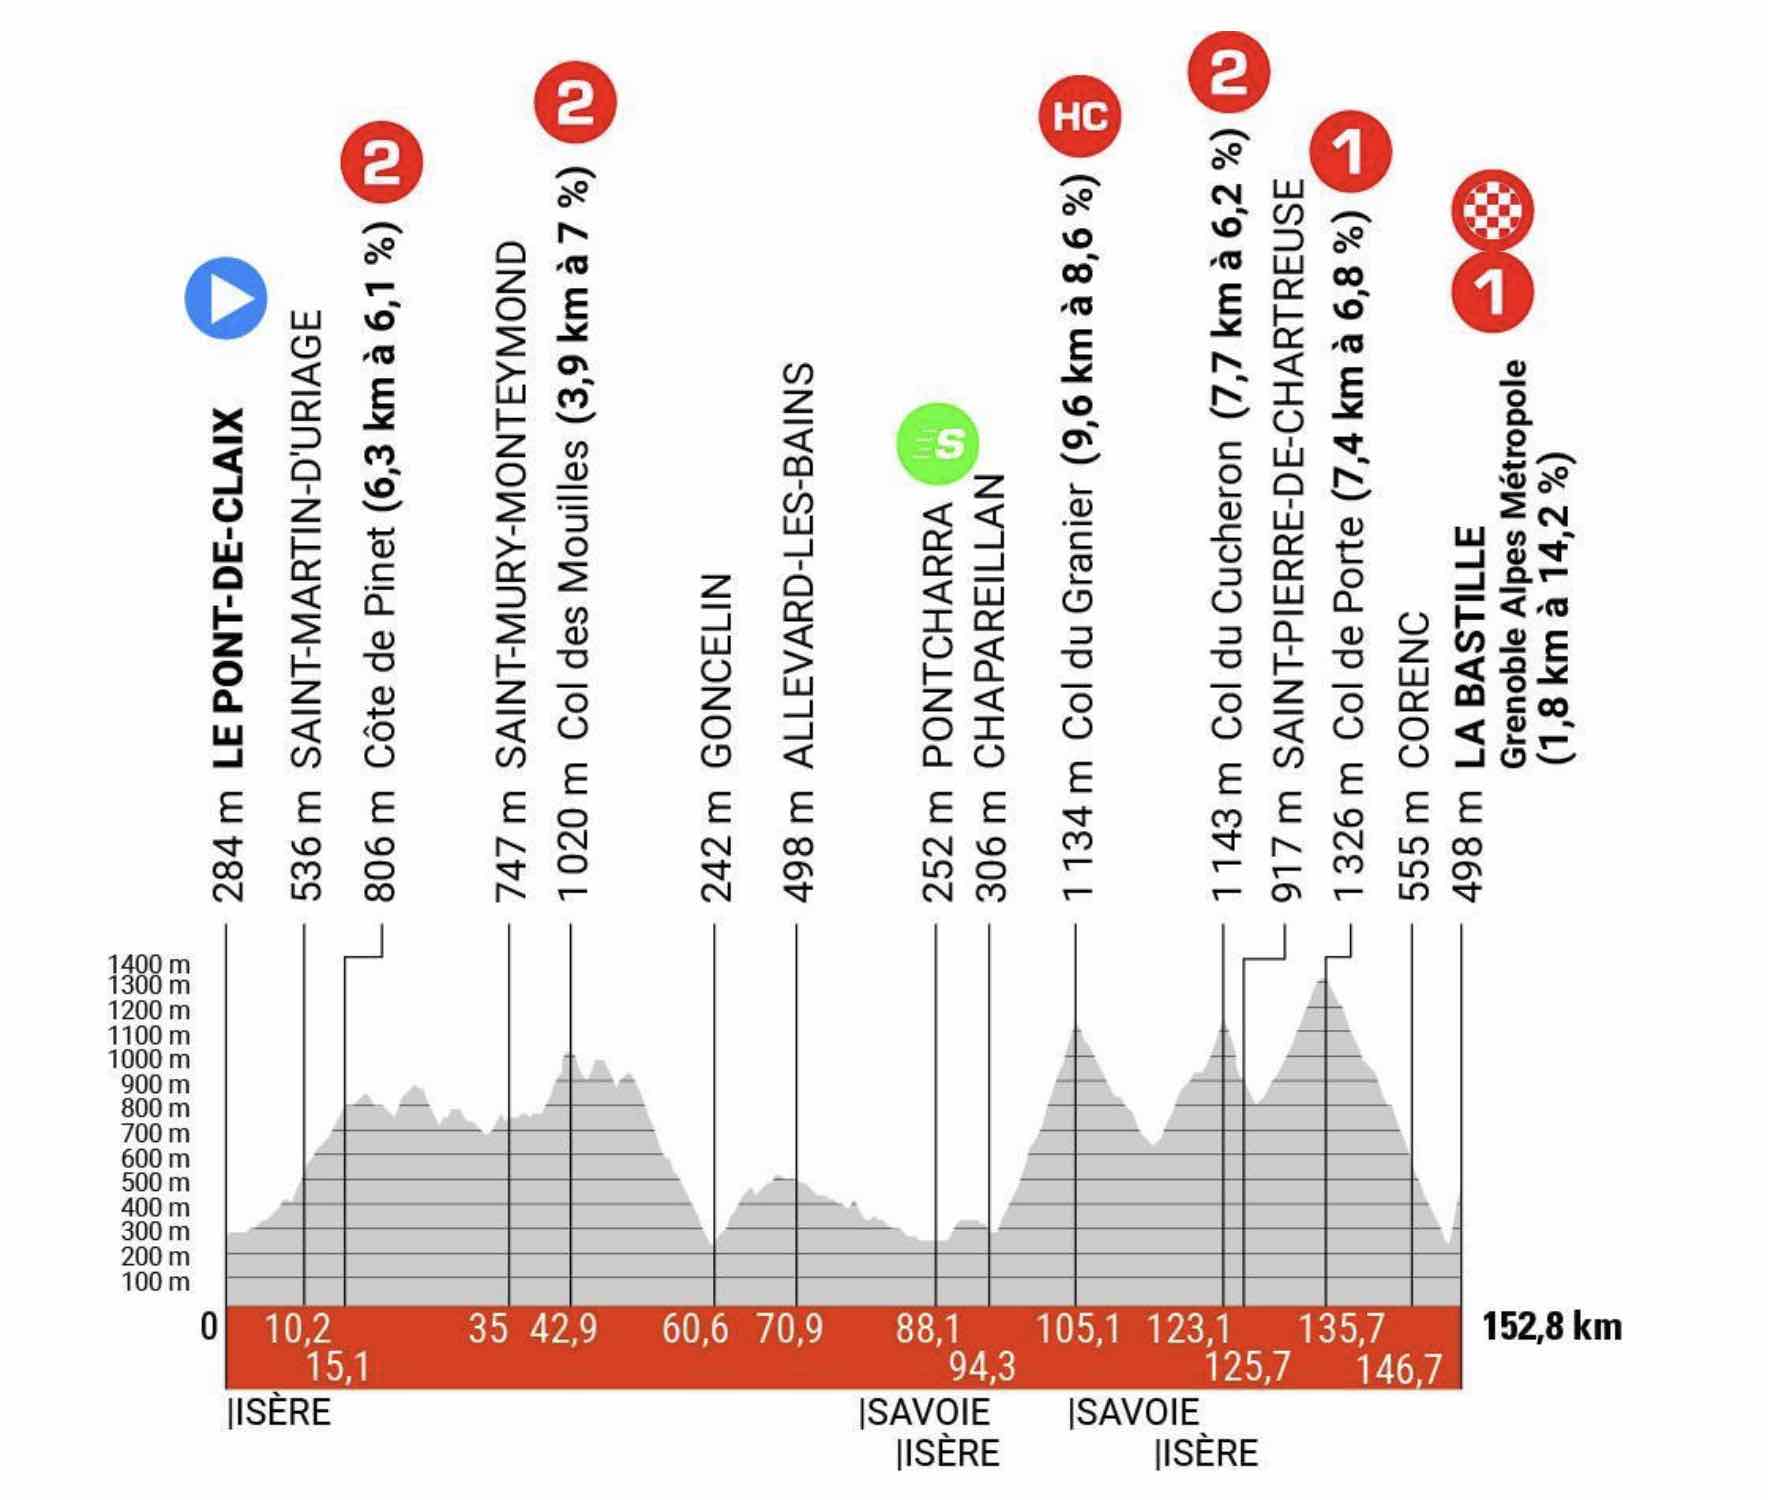 Critérium du Dauphiné 2023 : un concentré de montagne !